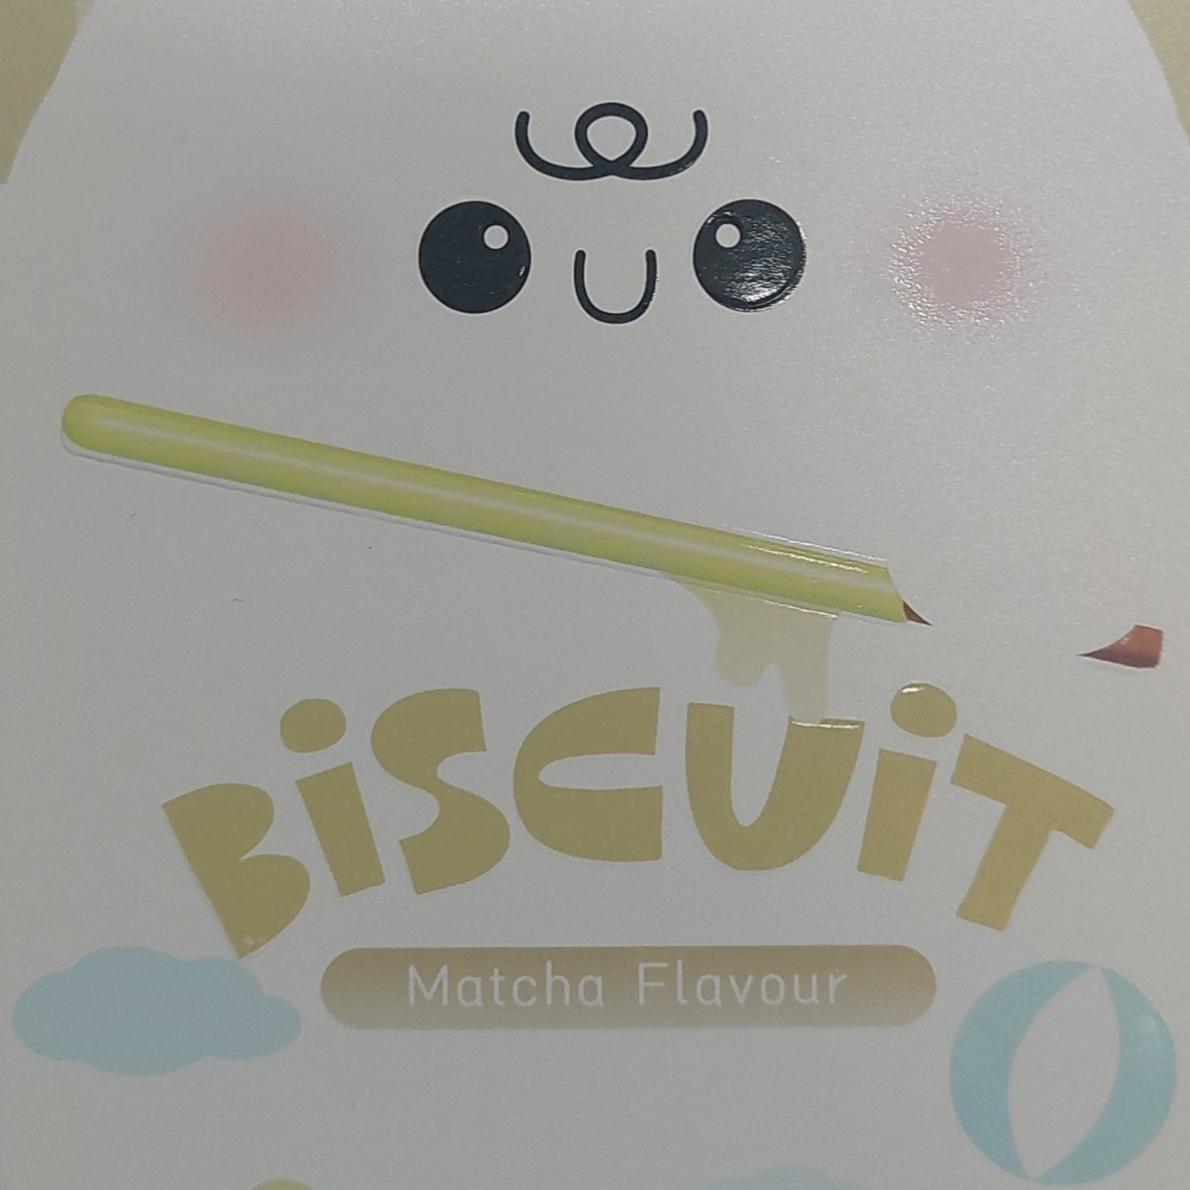 Fotografie - Biscuit Matcha flavour Tokimeki